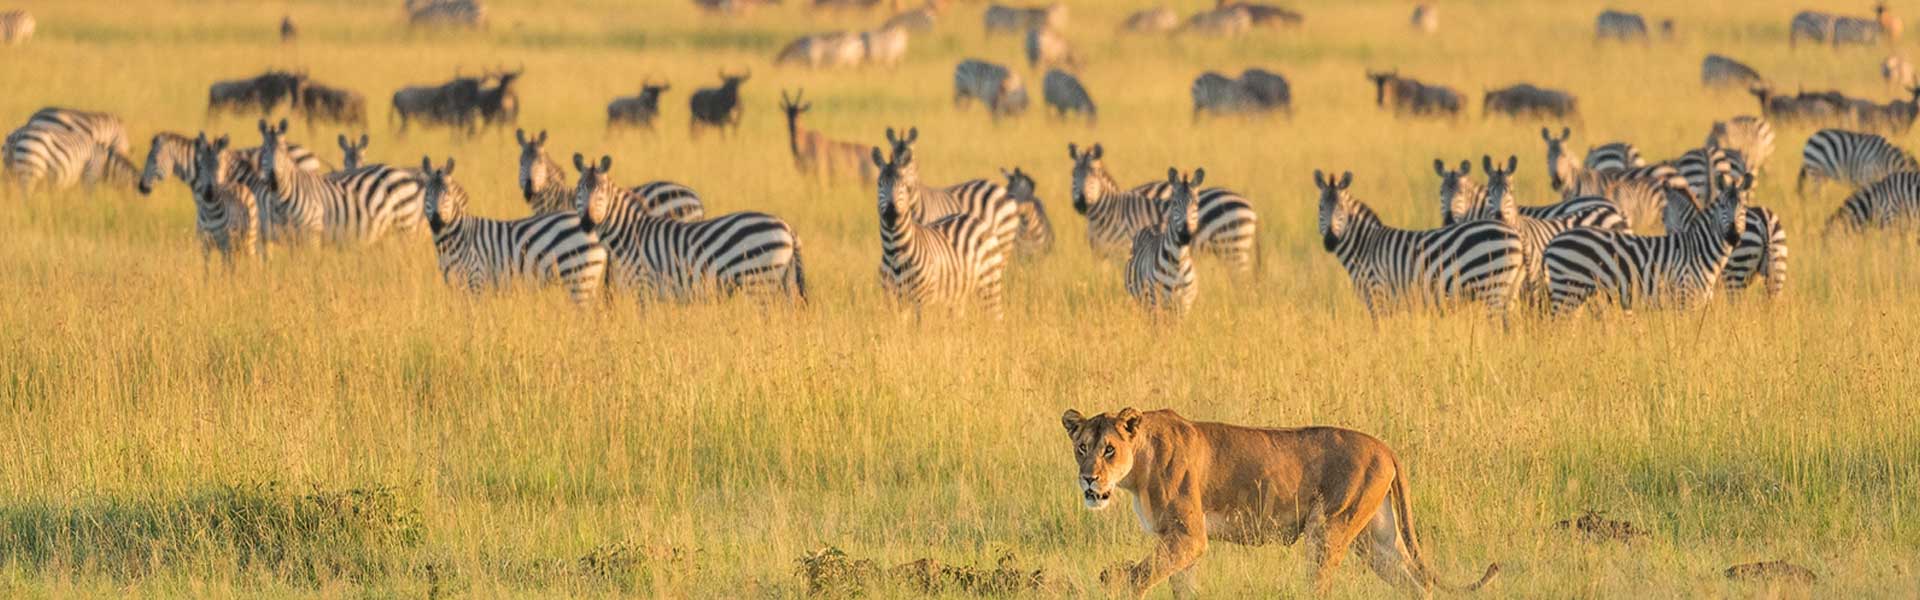 tanzania and uganda safari